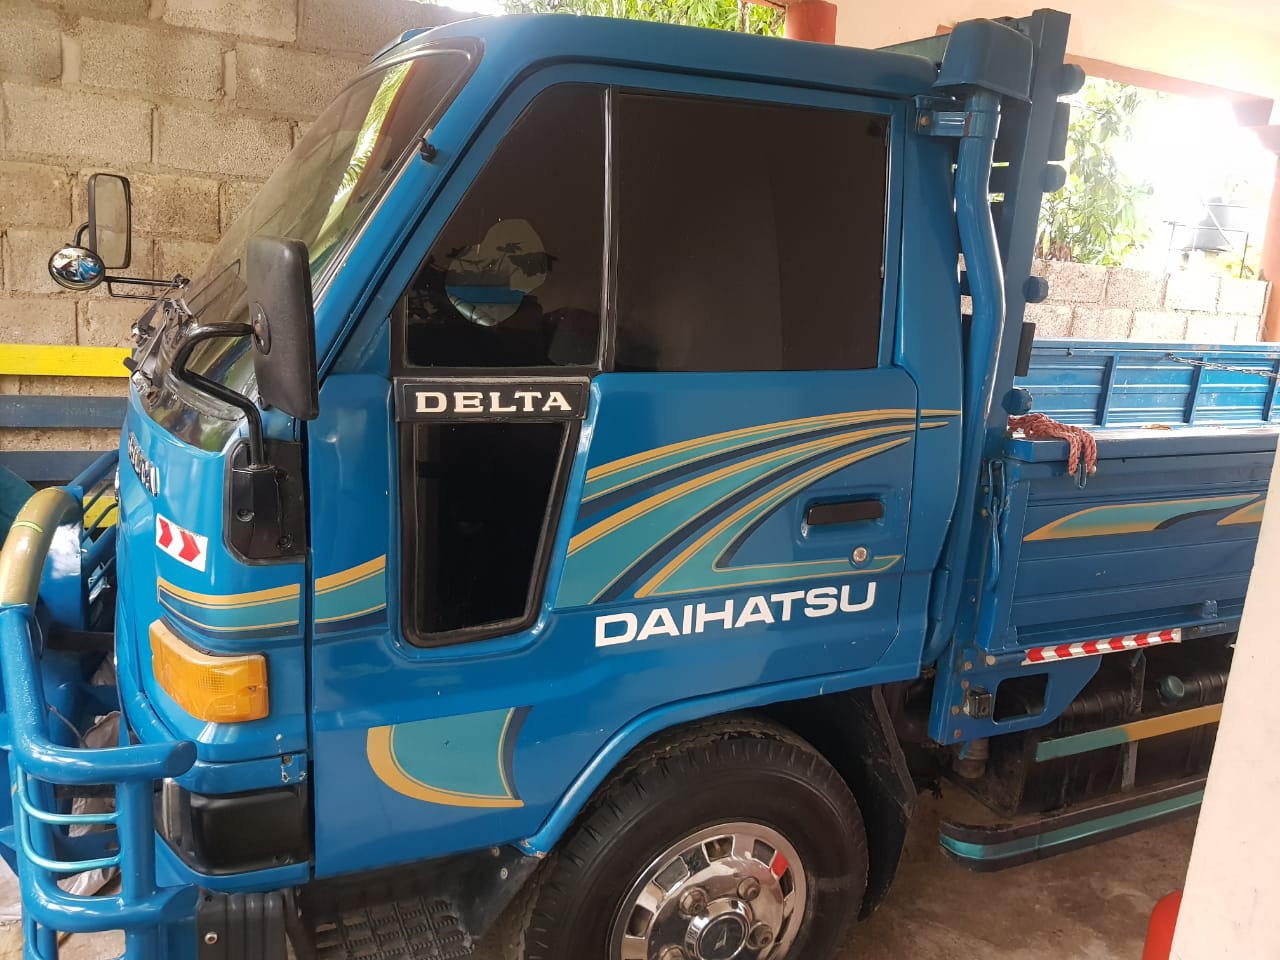 camiones y vehiculos pesados - Daihatsu delta 